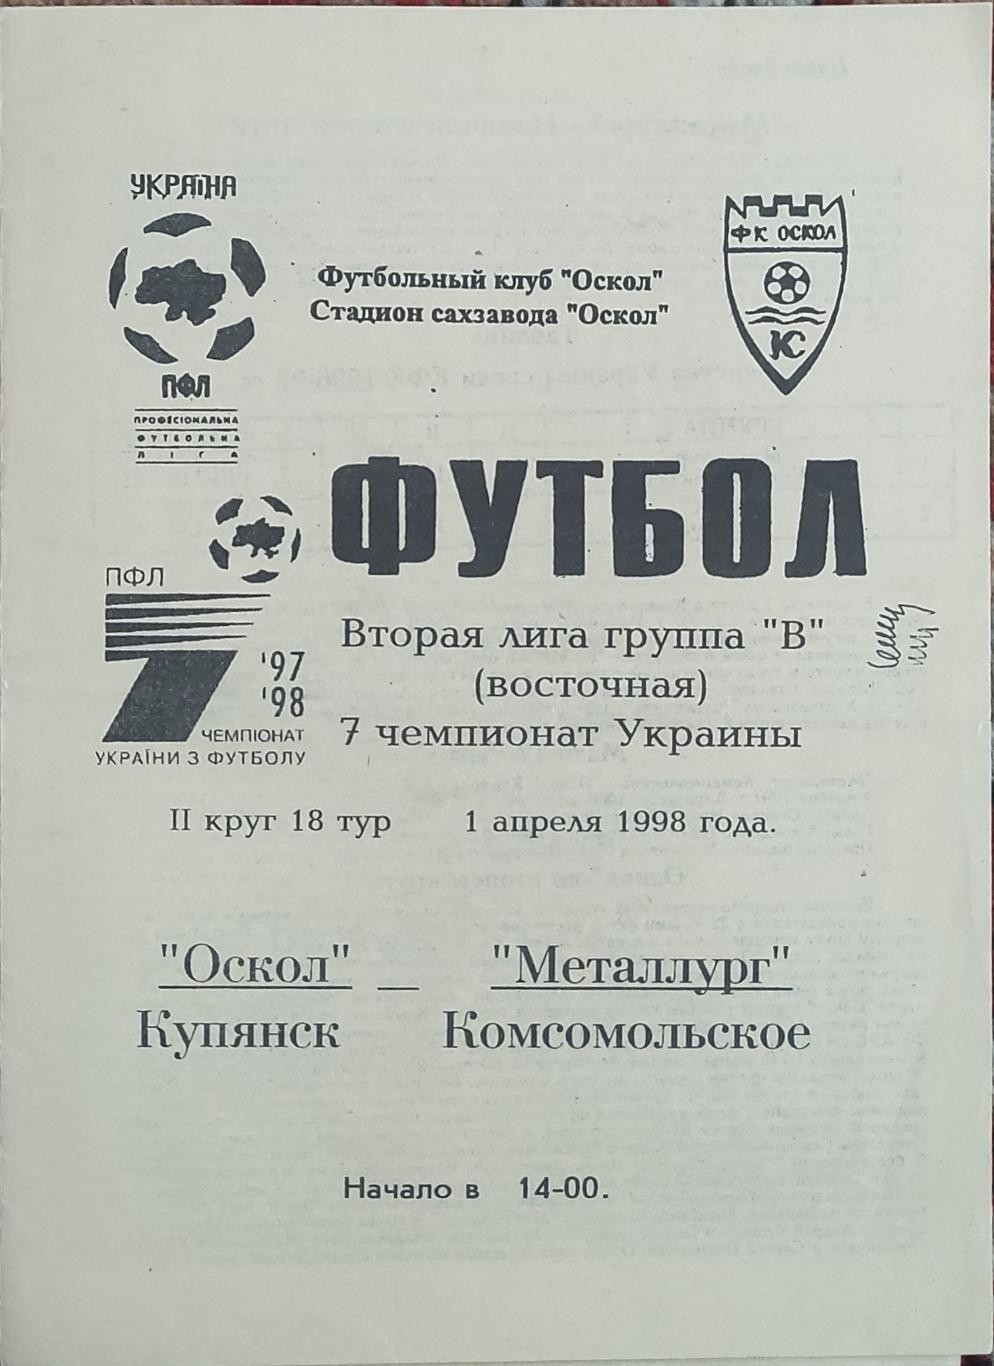 Оскол Купянск -Металлург Комсомольское .1.04.1998